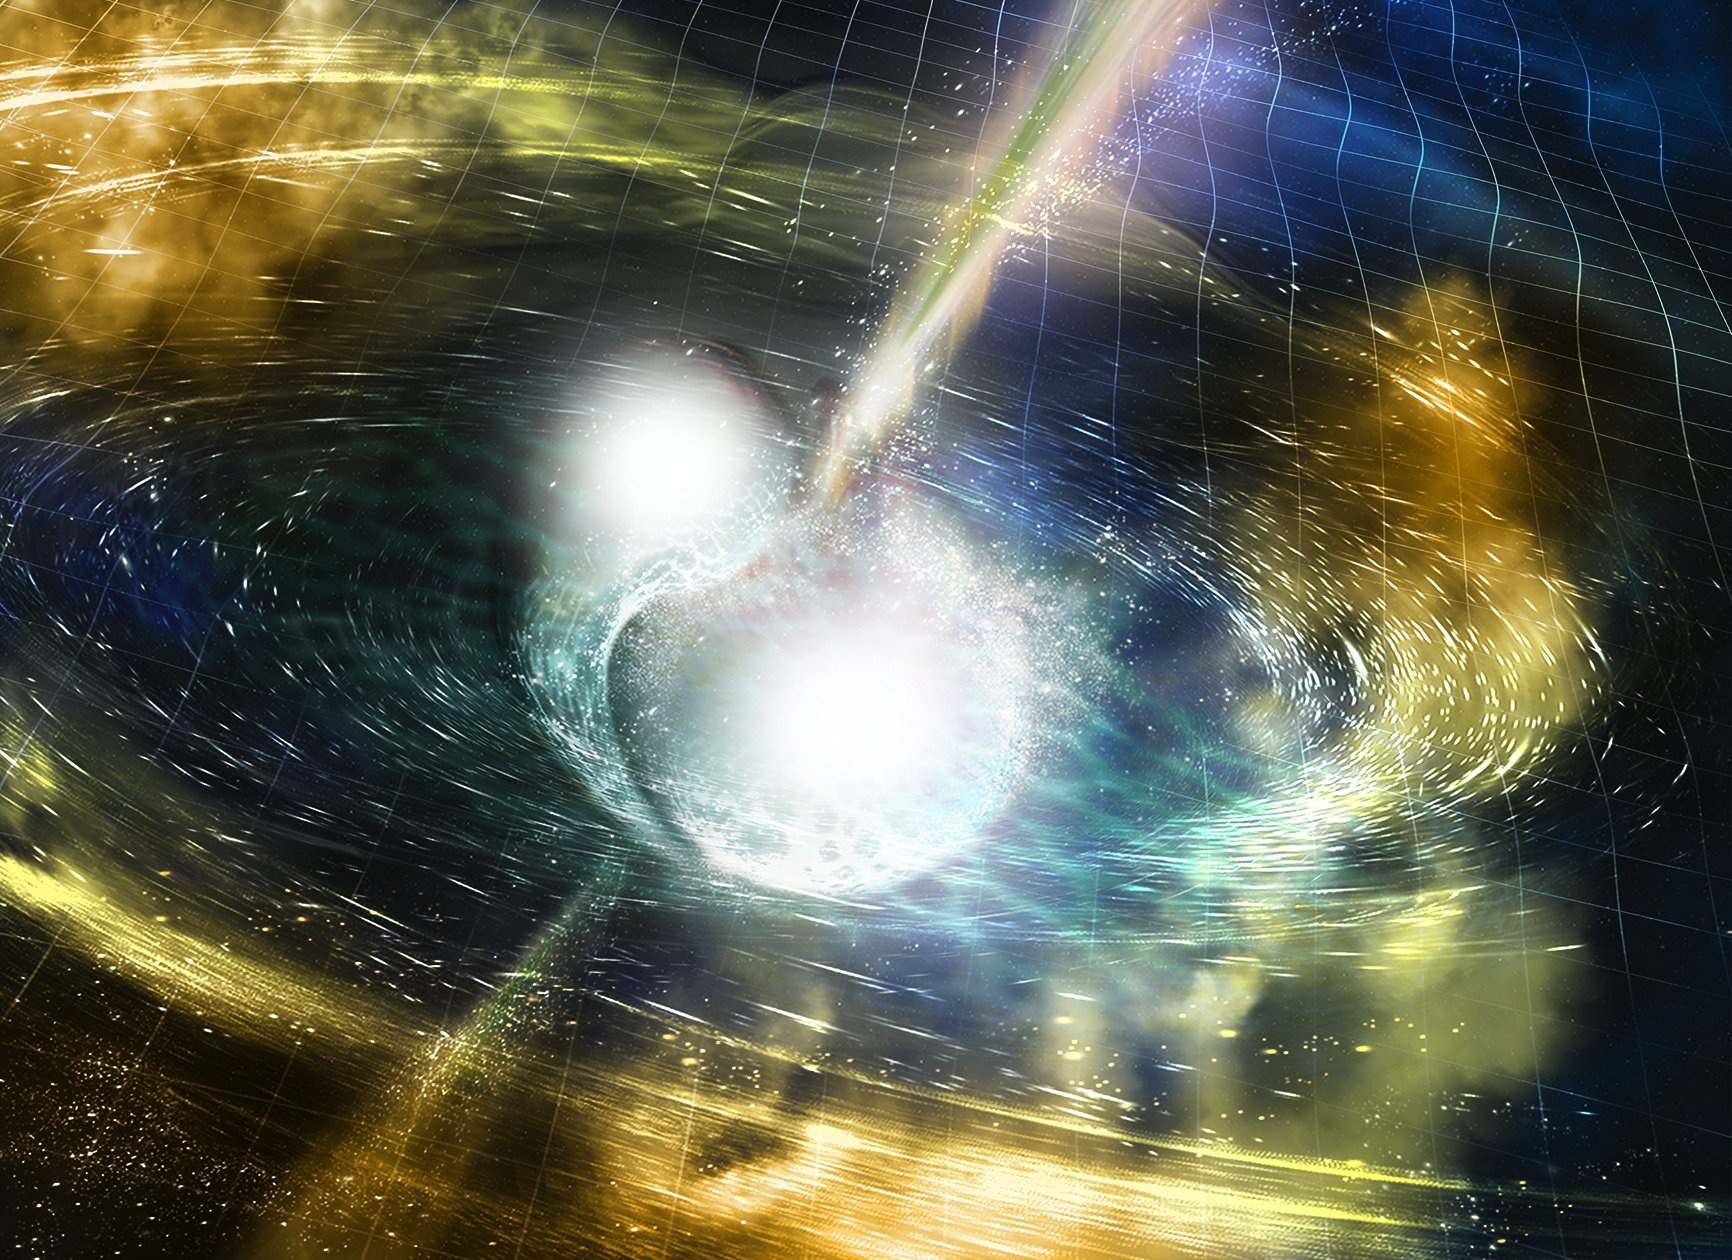 lustración de dos estrellas de neutrones en el momento de la fusión. Fuente: NSF / LIGO / Universidad Estatal de Sonoma / A. Simonnet